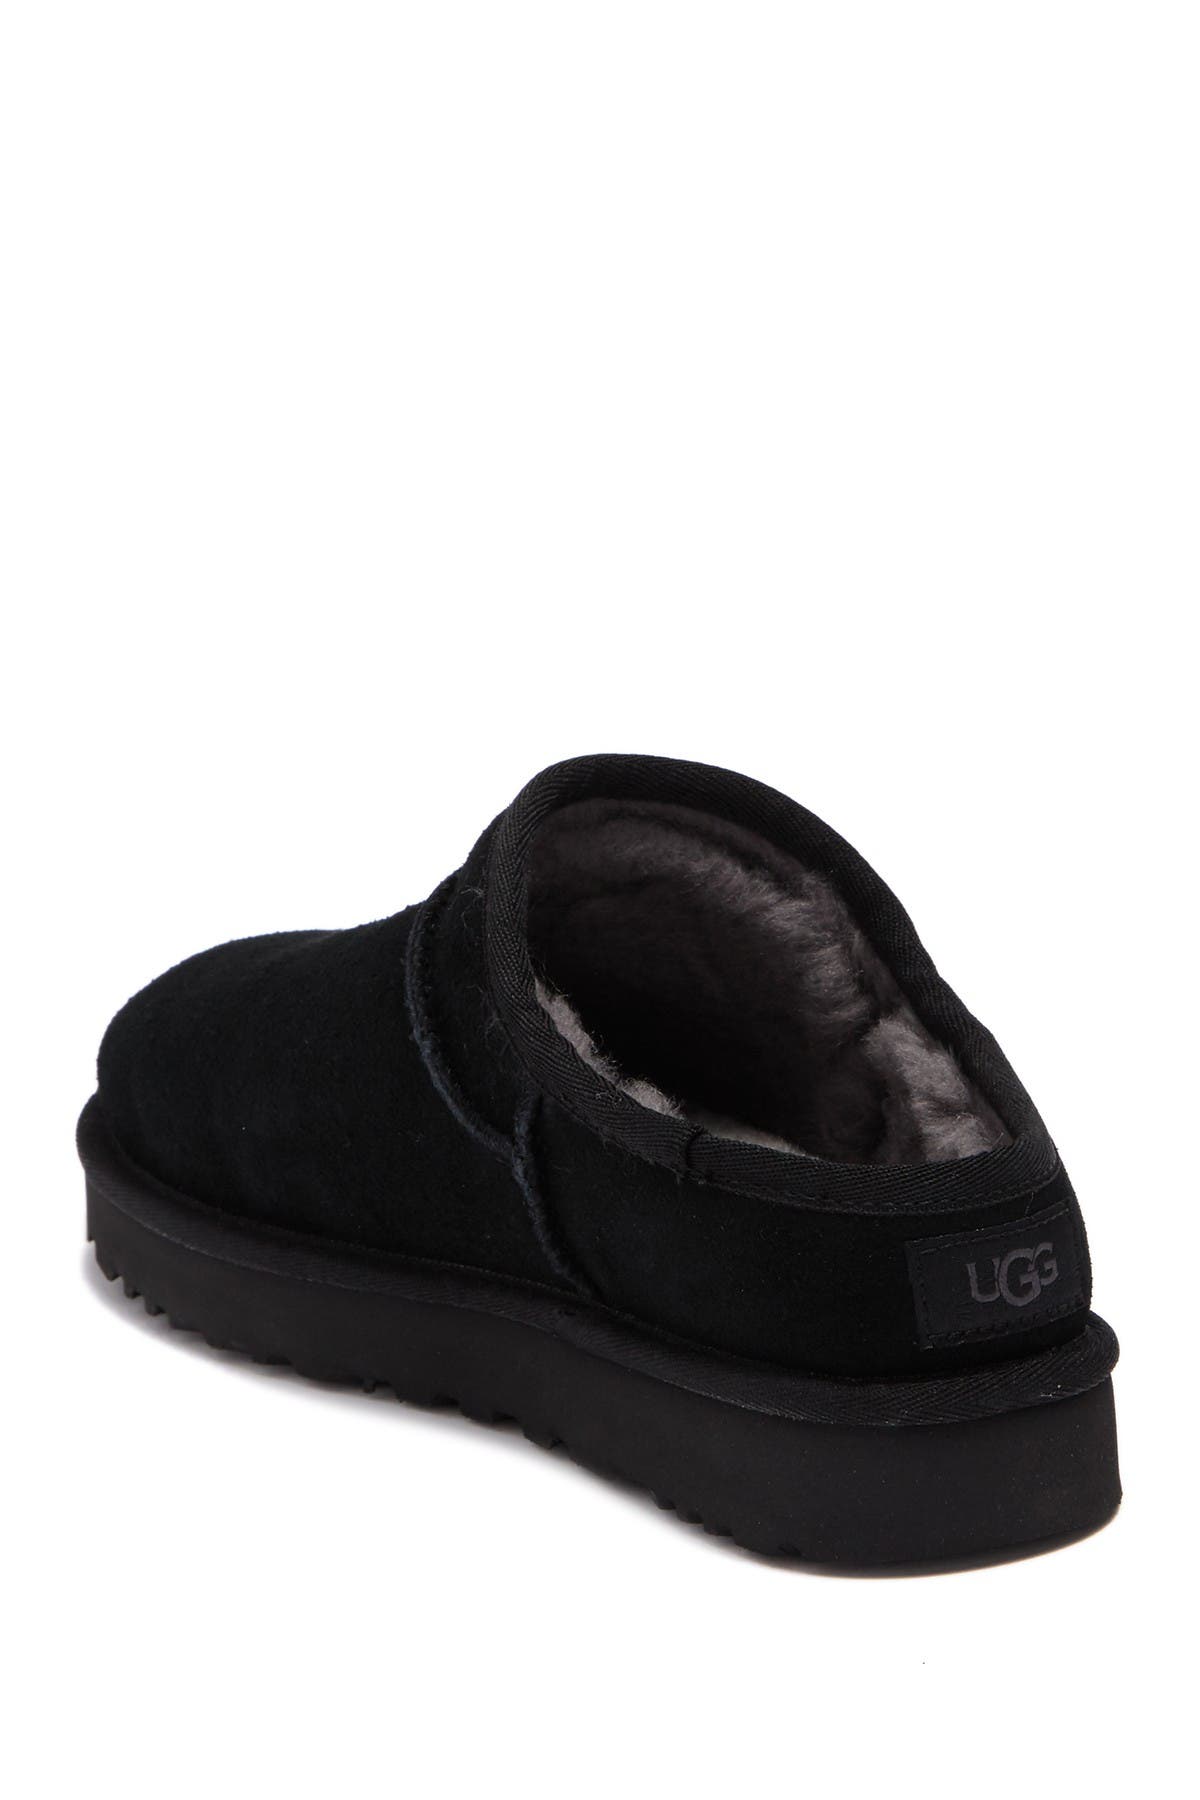 ugg suede classic slipper sale